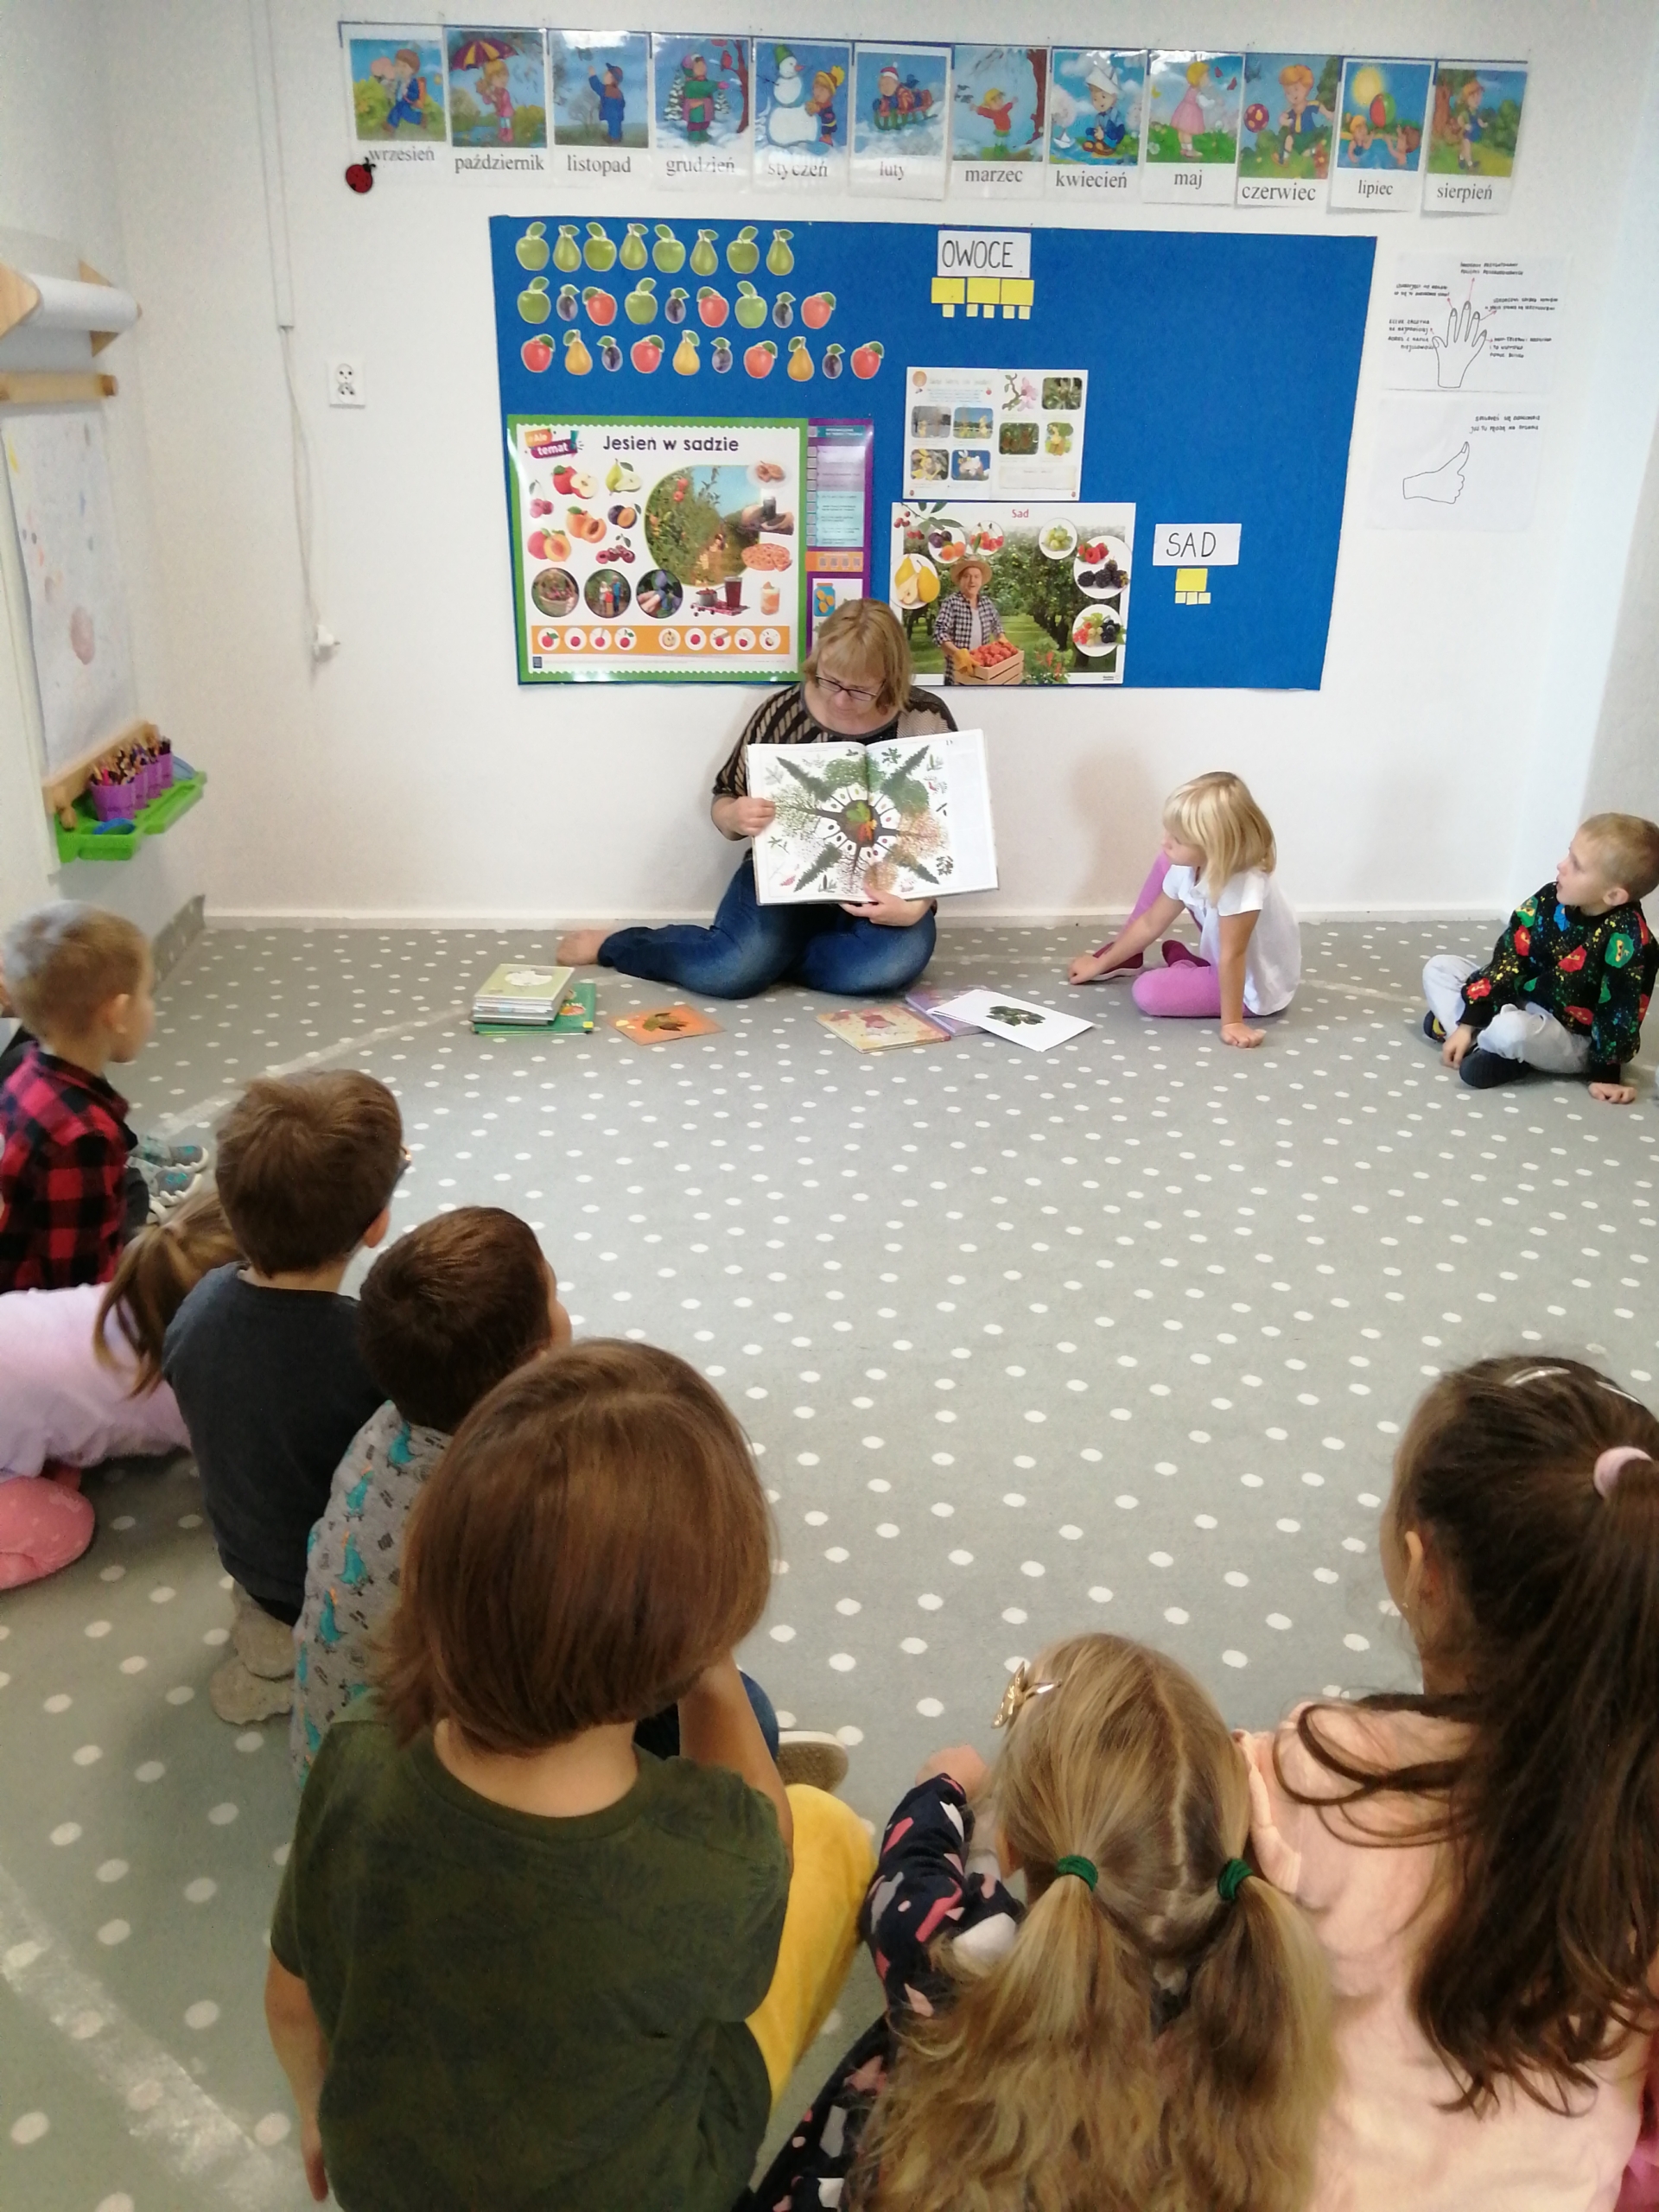 Bibliotekarka pokazująca dzieciom książkę